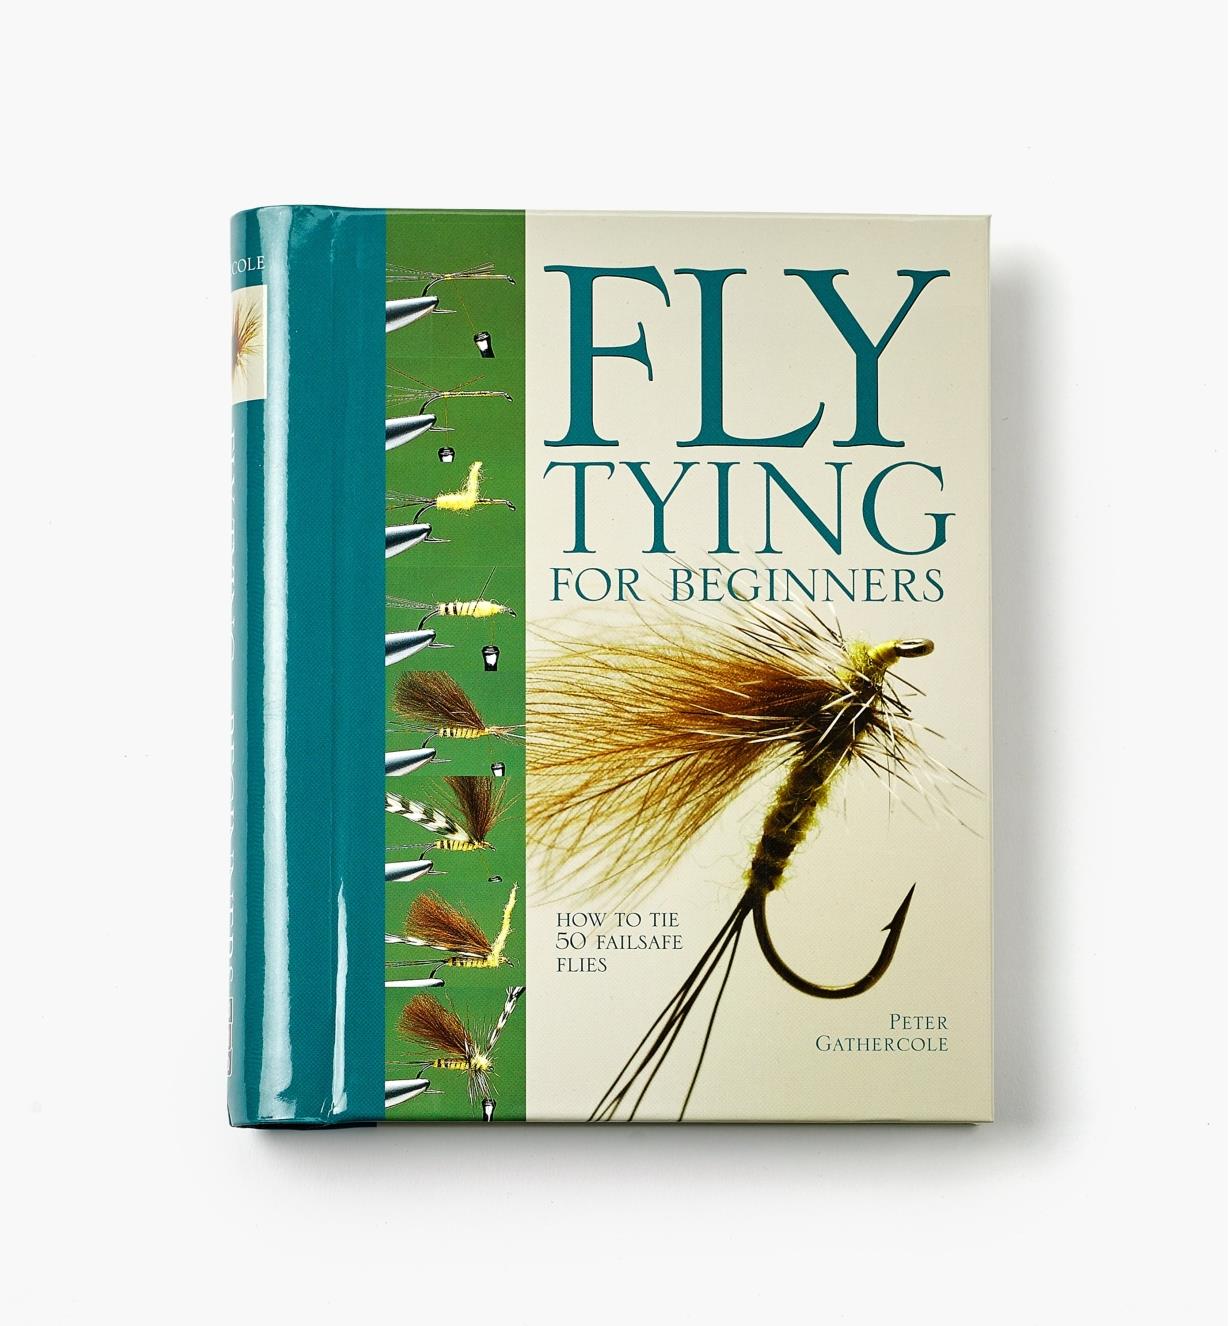 LA467 - Fly Tying for Beginners